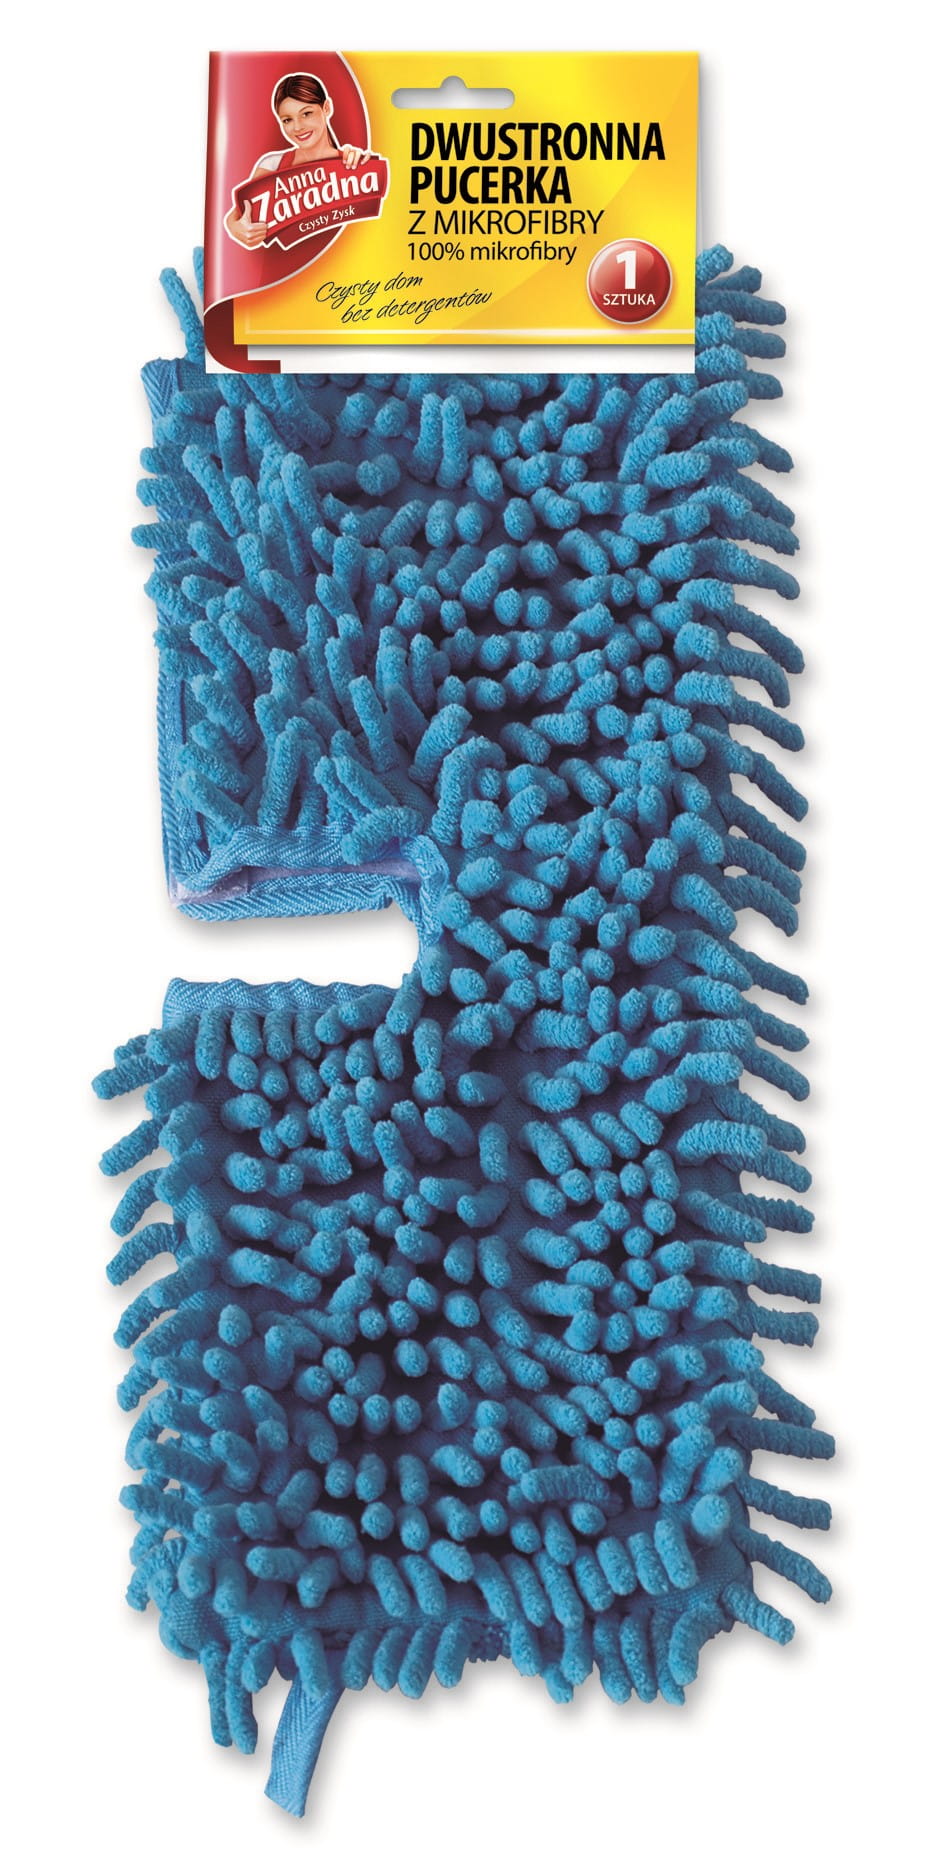 Zapas do mopa płaski z dwustronną pucerką z mikrofibry Anna Zaradna 34,5cm